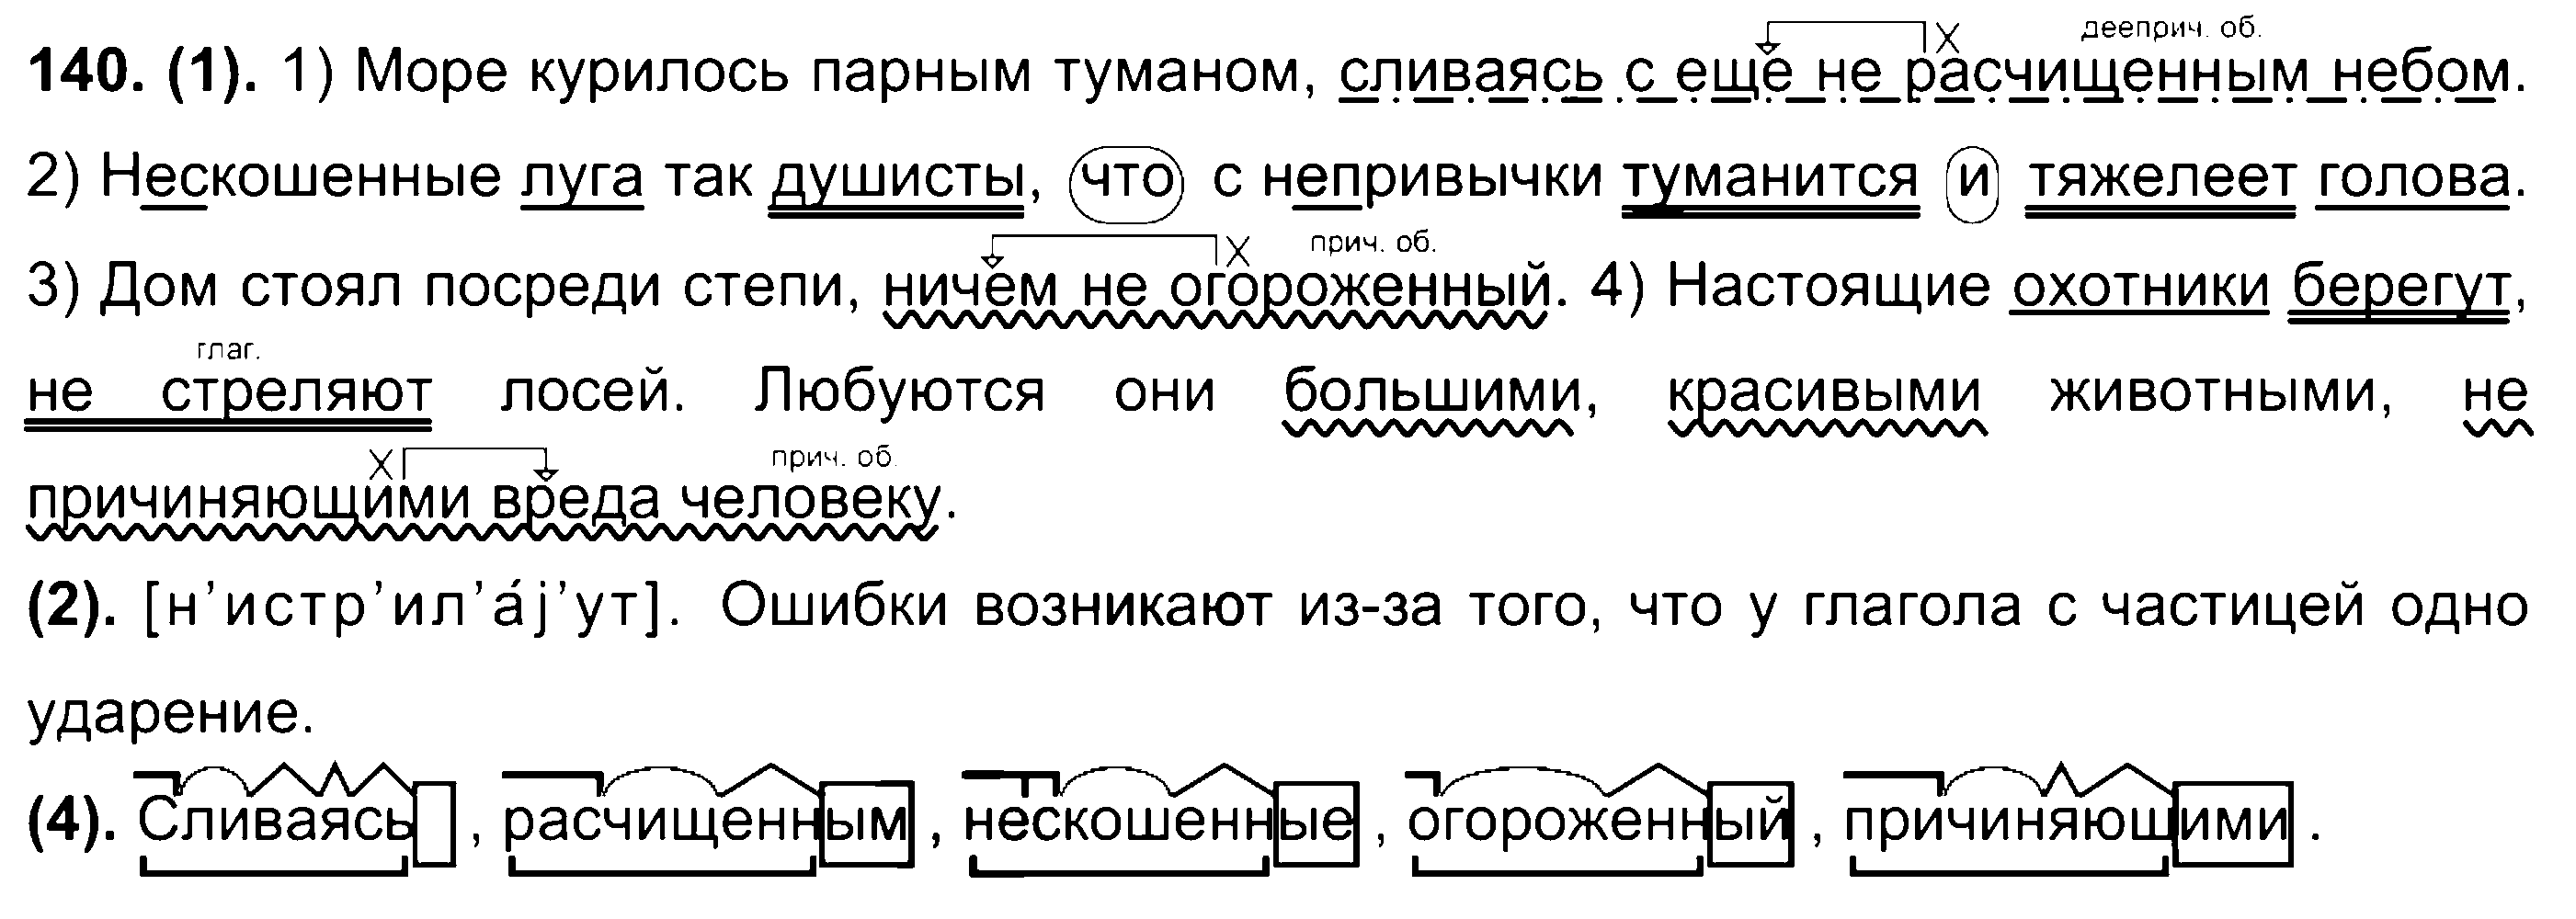 ГДЗ Русский язык 7 класс - 140